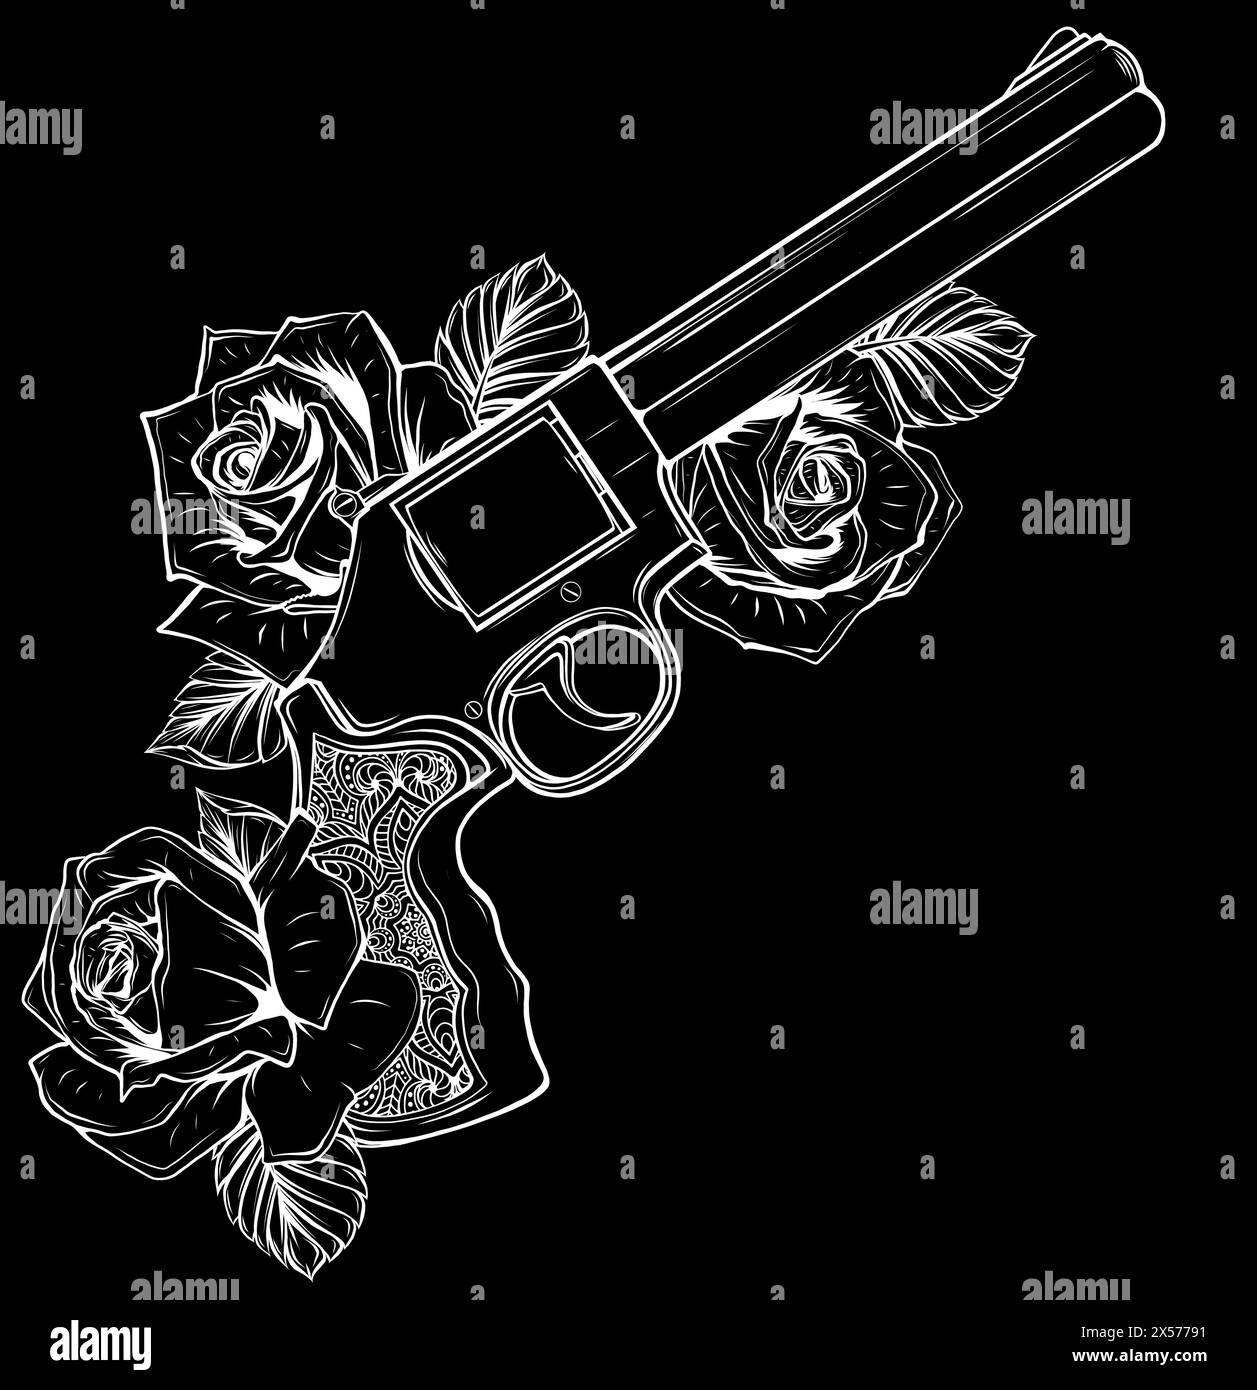 Silhouette blanche de pistolet et rose sur illustration de fond noir Illustration de Vecteur